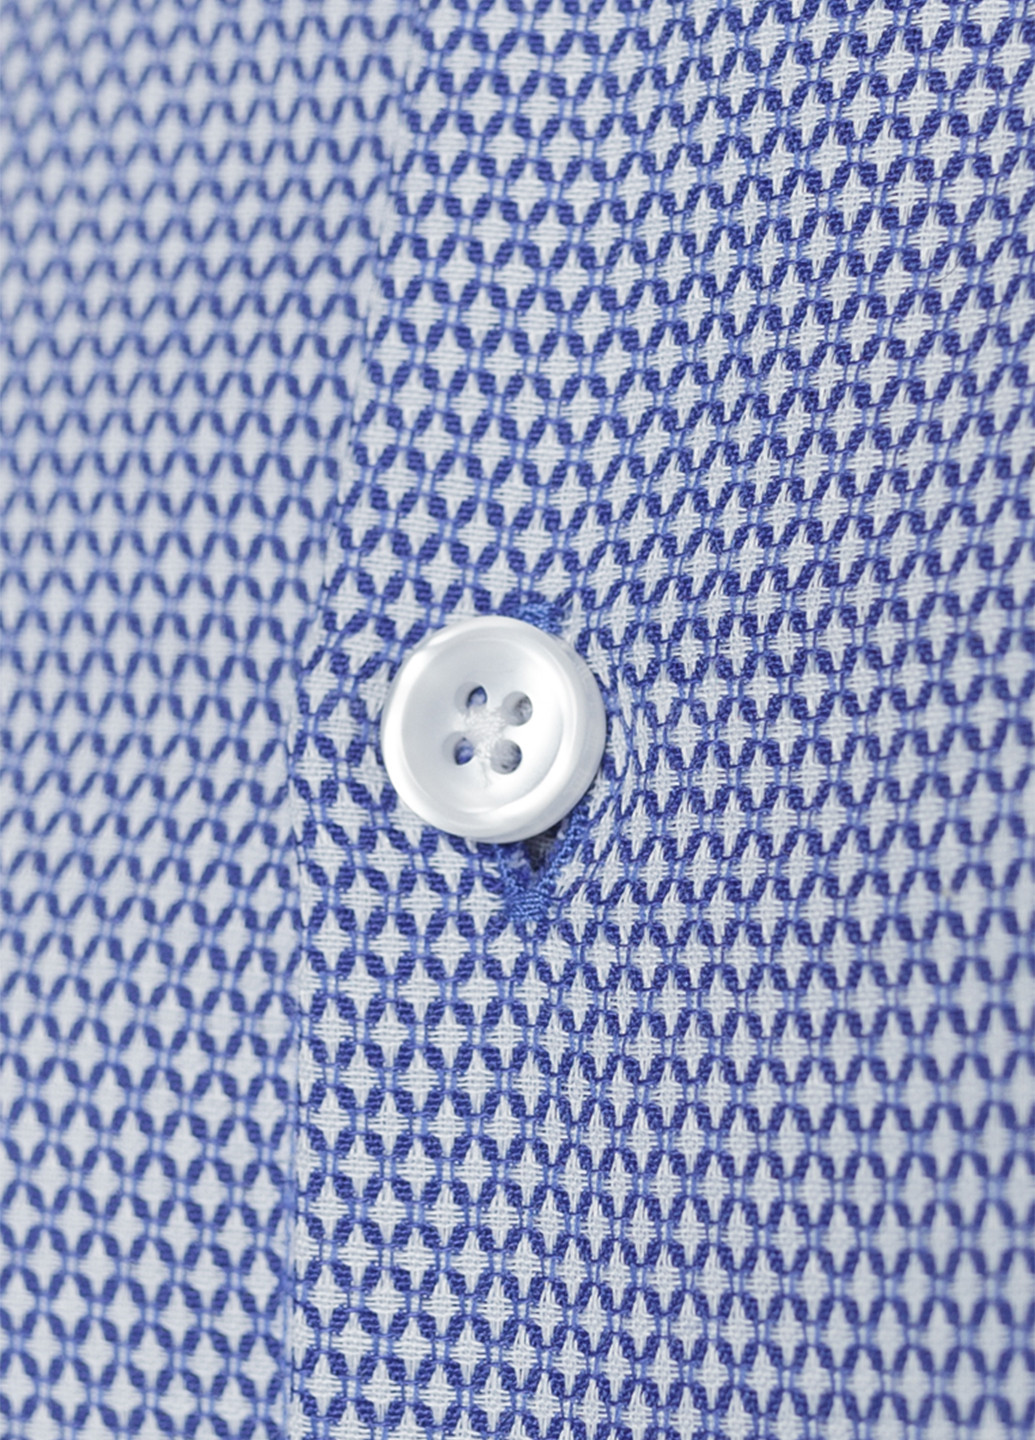 Светло-голубой классическая рубашка с геометрическим узором Arber